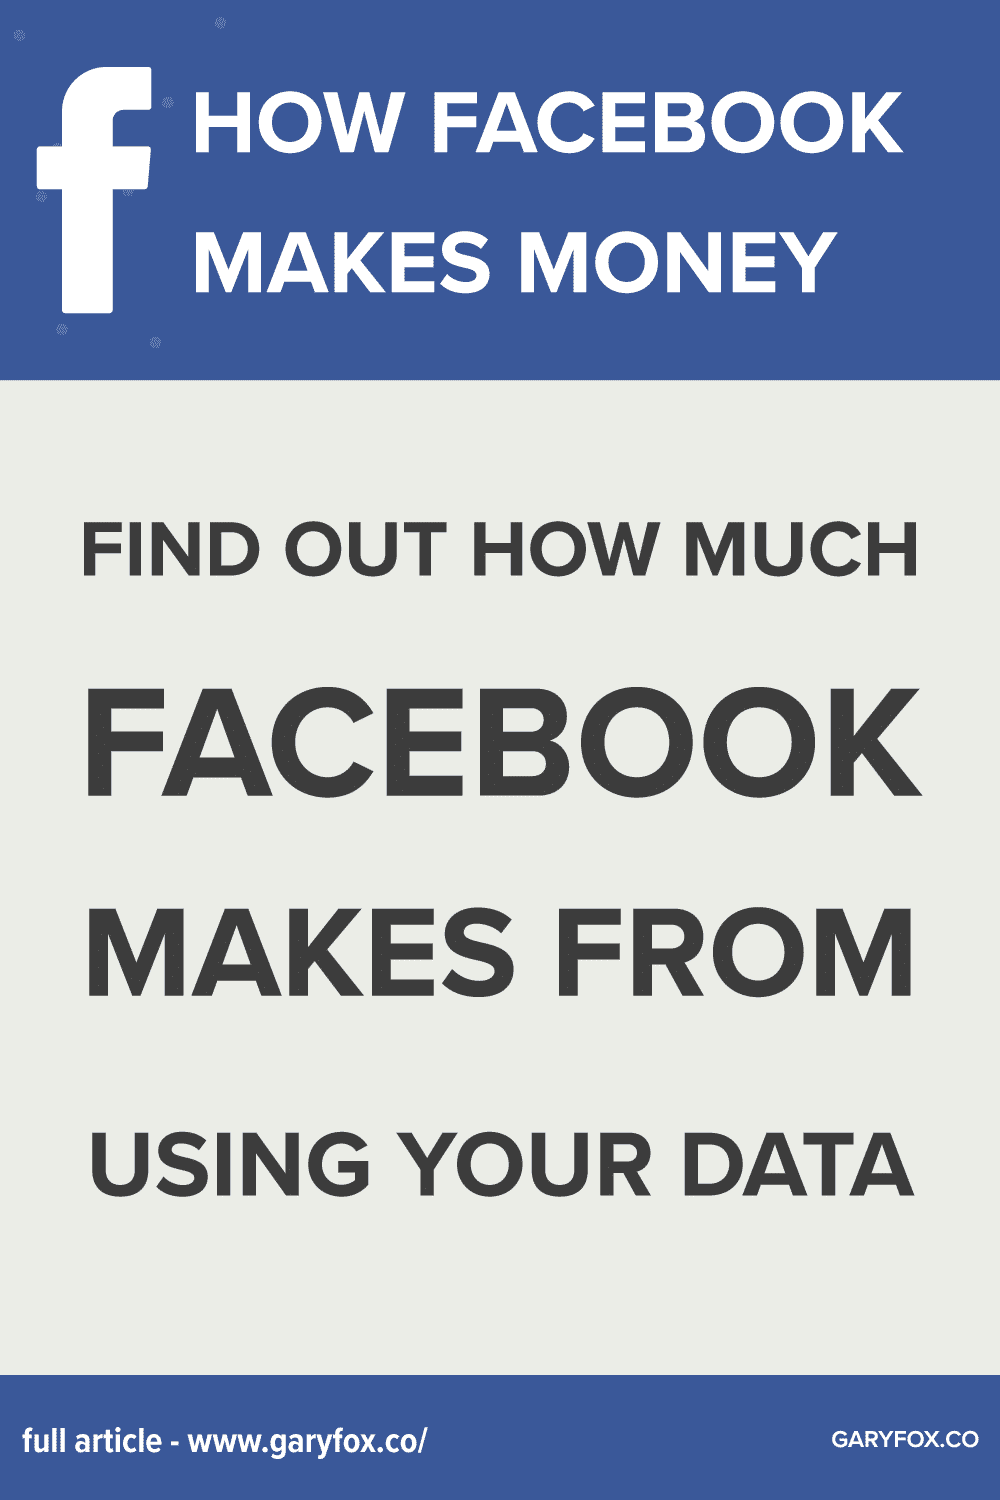 Facebook Business Model: How Does Facebook Make Money